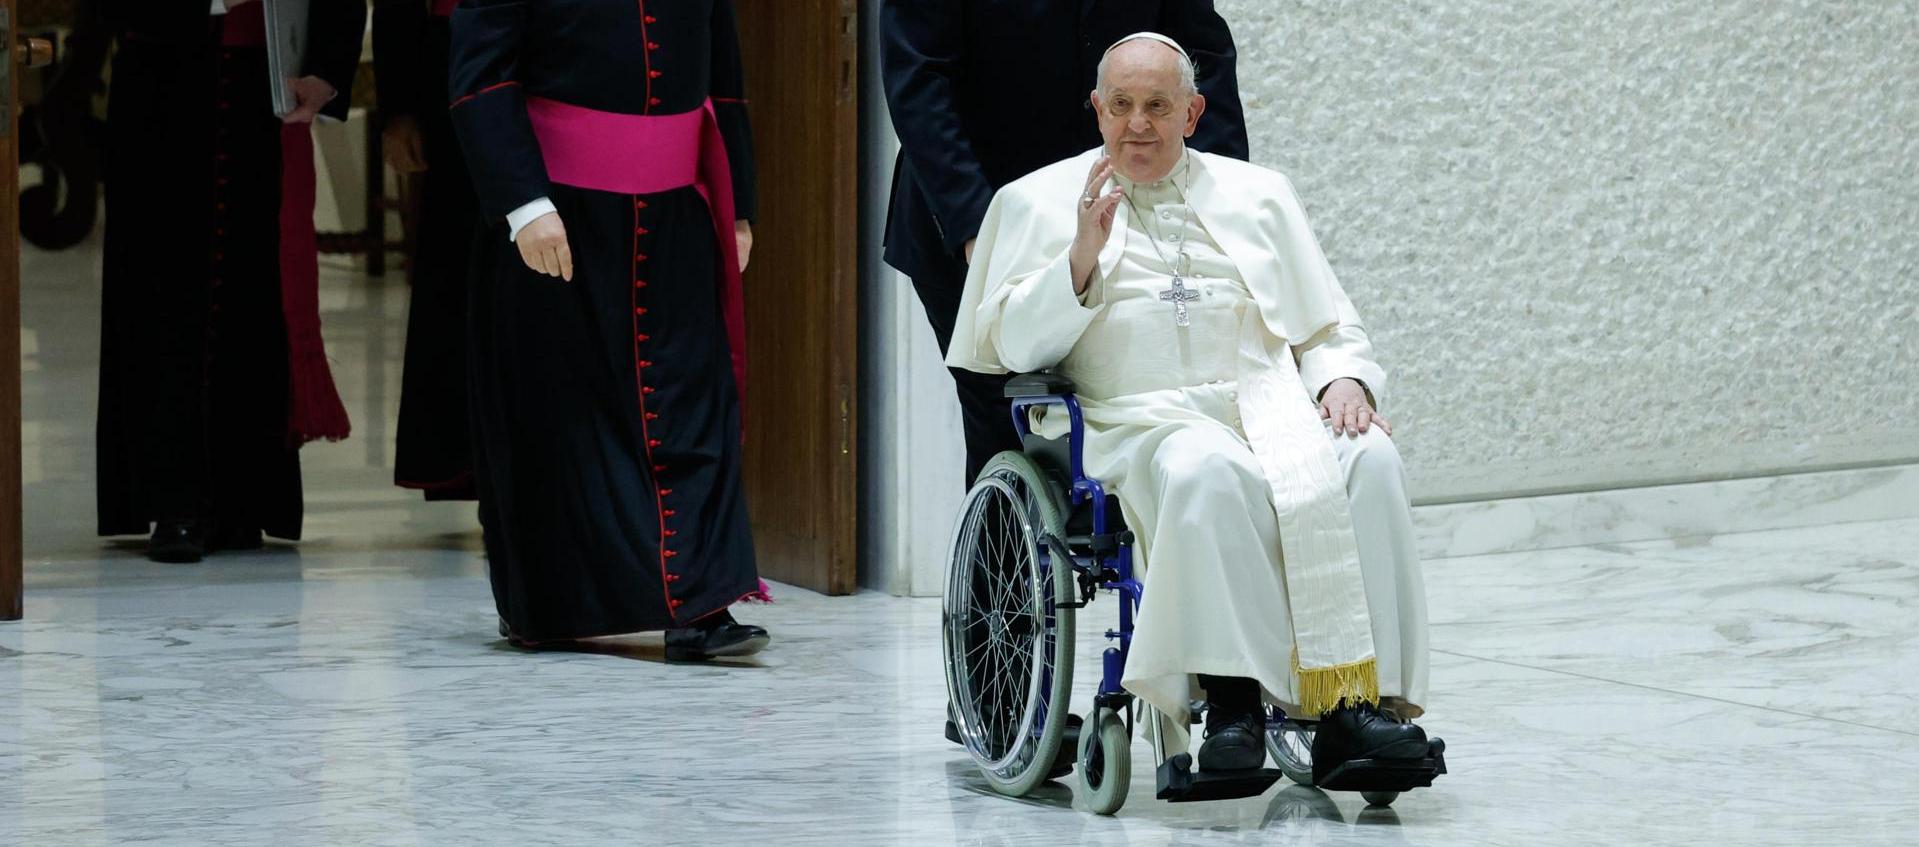 El papa Francisco saluda en silla de ruedas a su llegada al Aula Pablo VI.